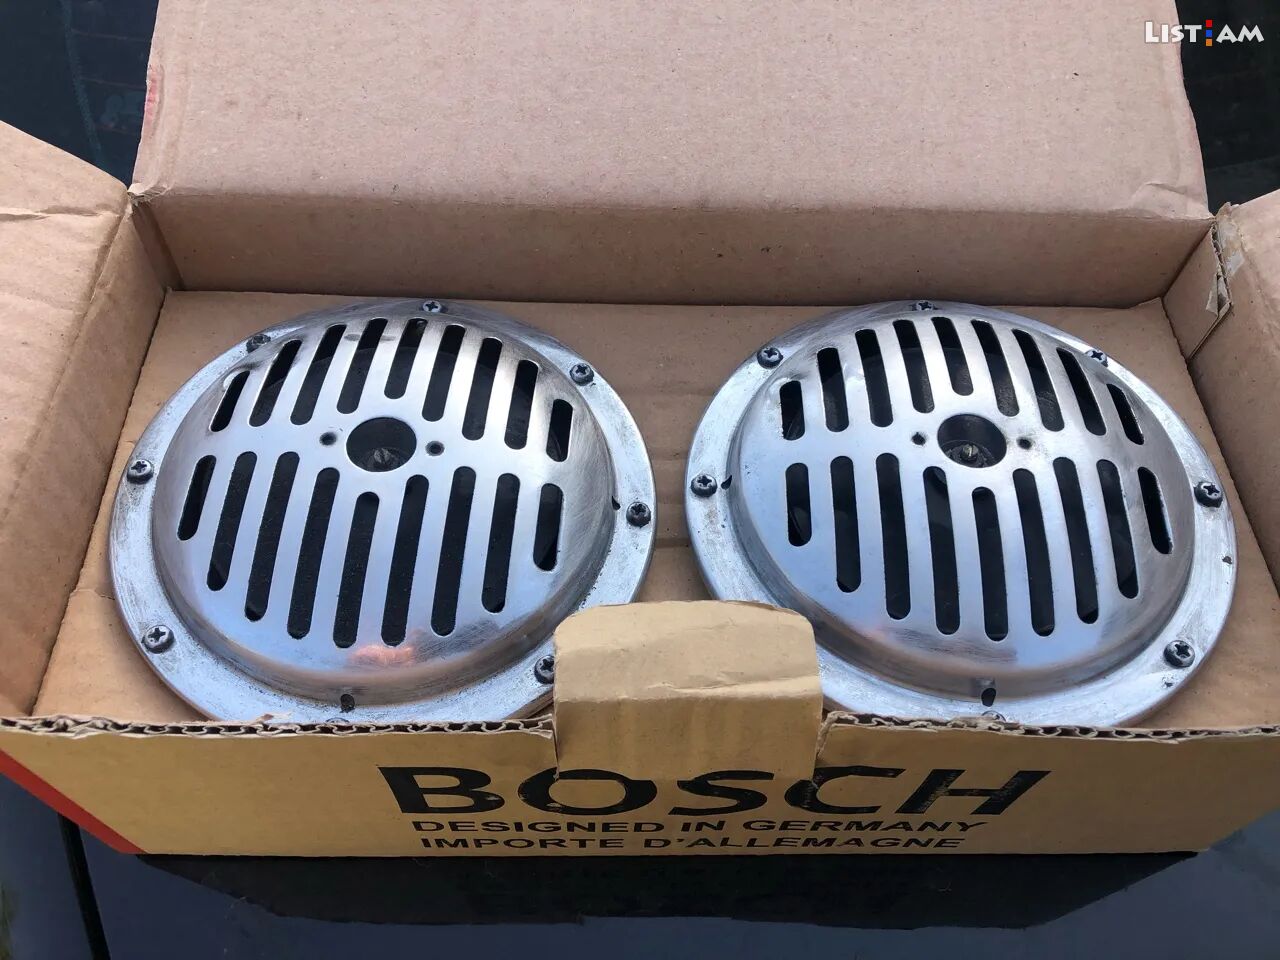 Bosch bosh բոշ